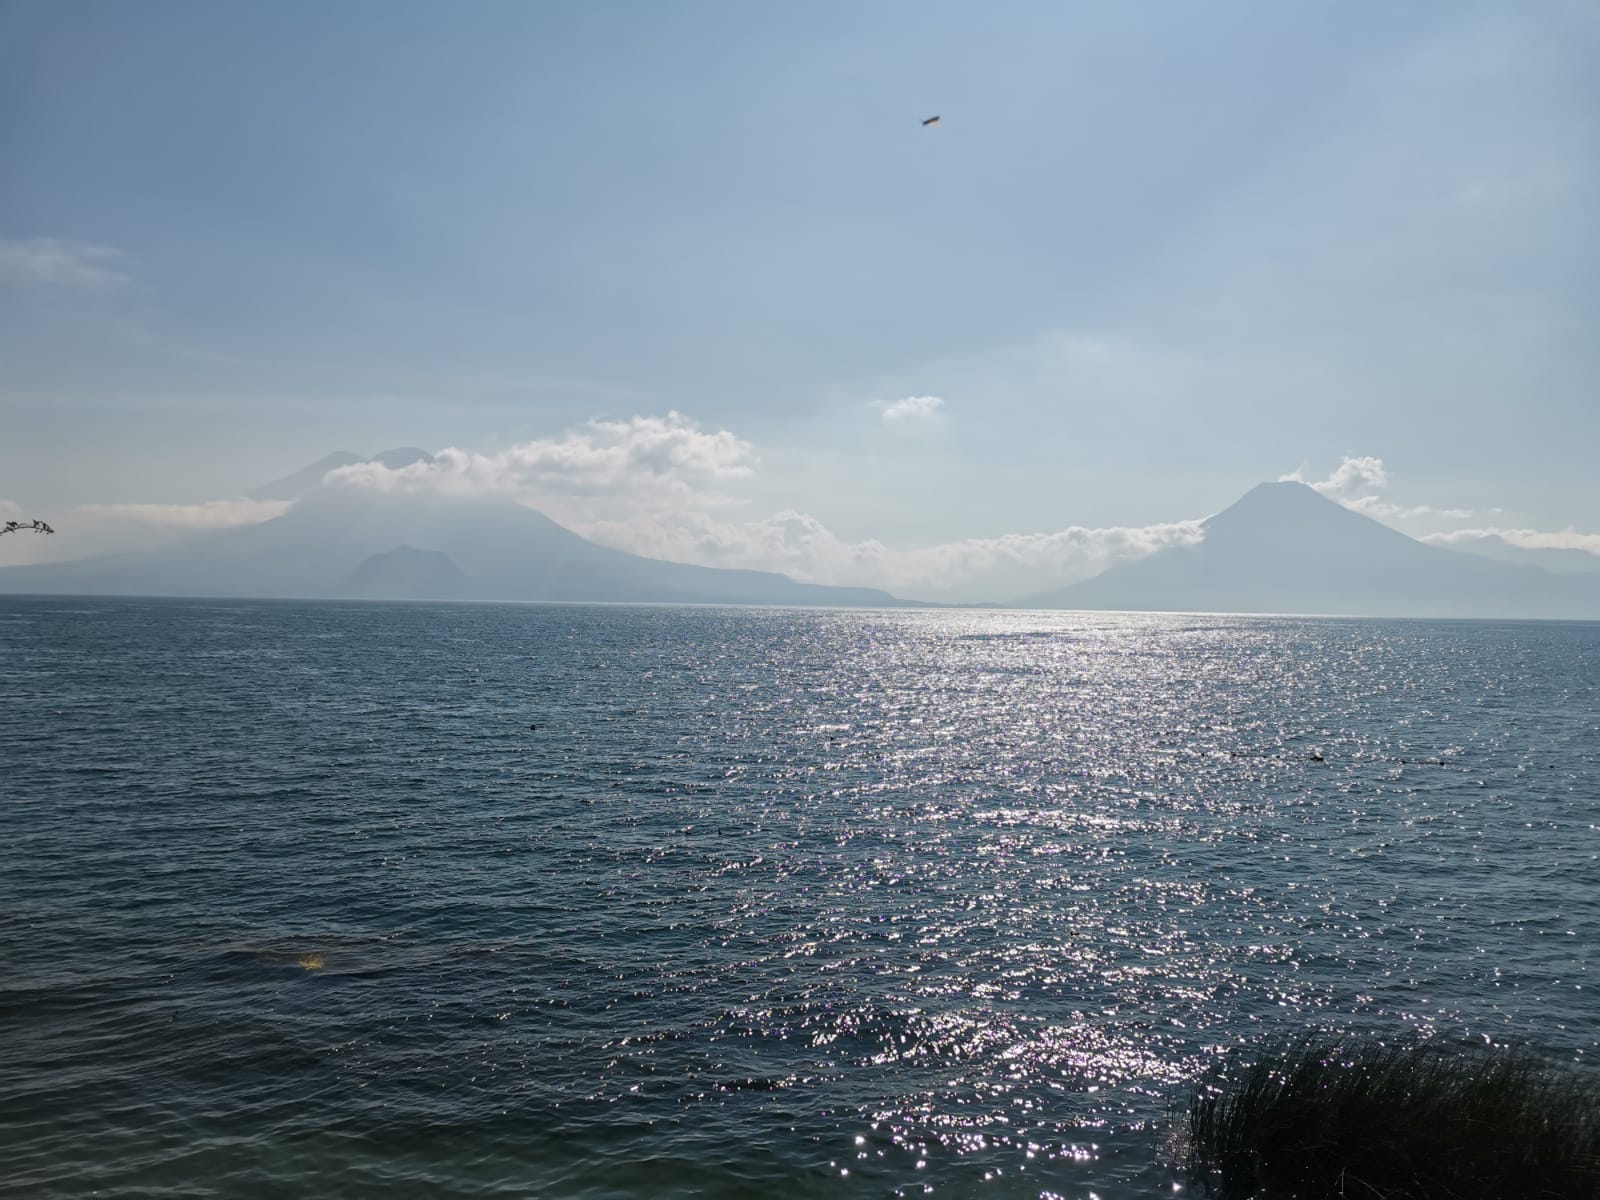 El Lago de Atitlán, en Sololá, es uno de los puntos turísticos más emblemáticos de Guatemala. (Foto Prensa Libre: Axel Vicente)